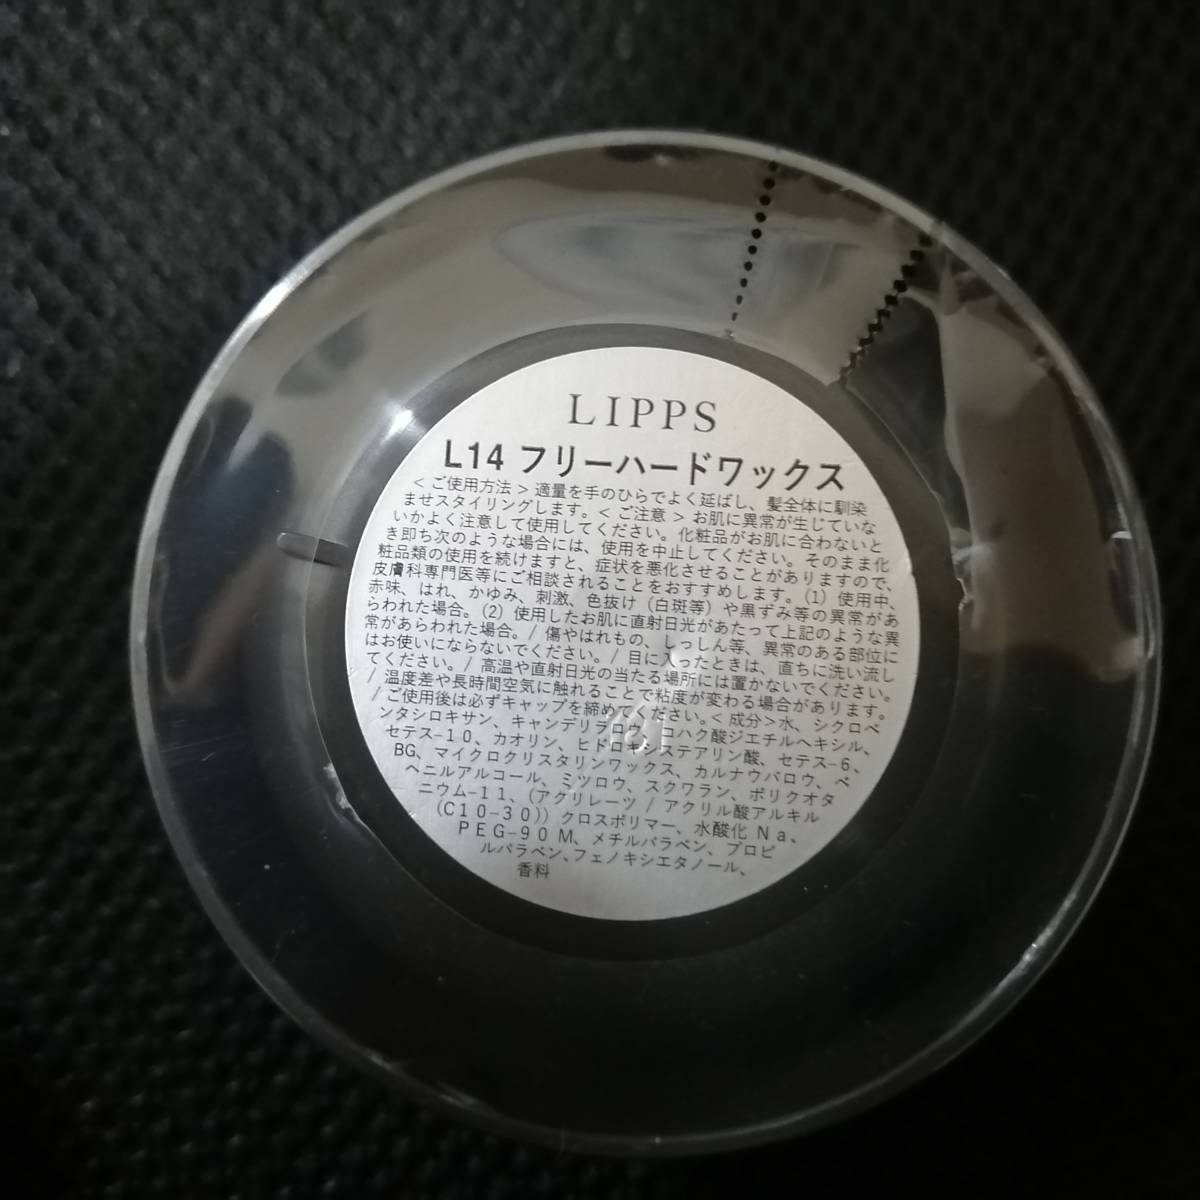 Lippsヘアワックス85g フリーキープ フリーハードセット ワックス 売買されたオークション情報 Yahooの商品情報をアーカイブ公開 オークファン Aucfan Com